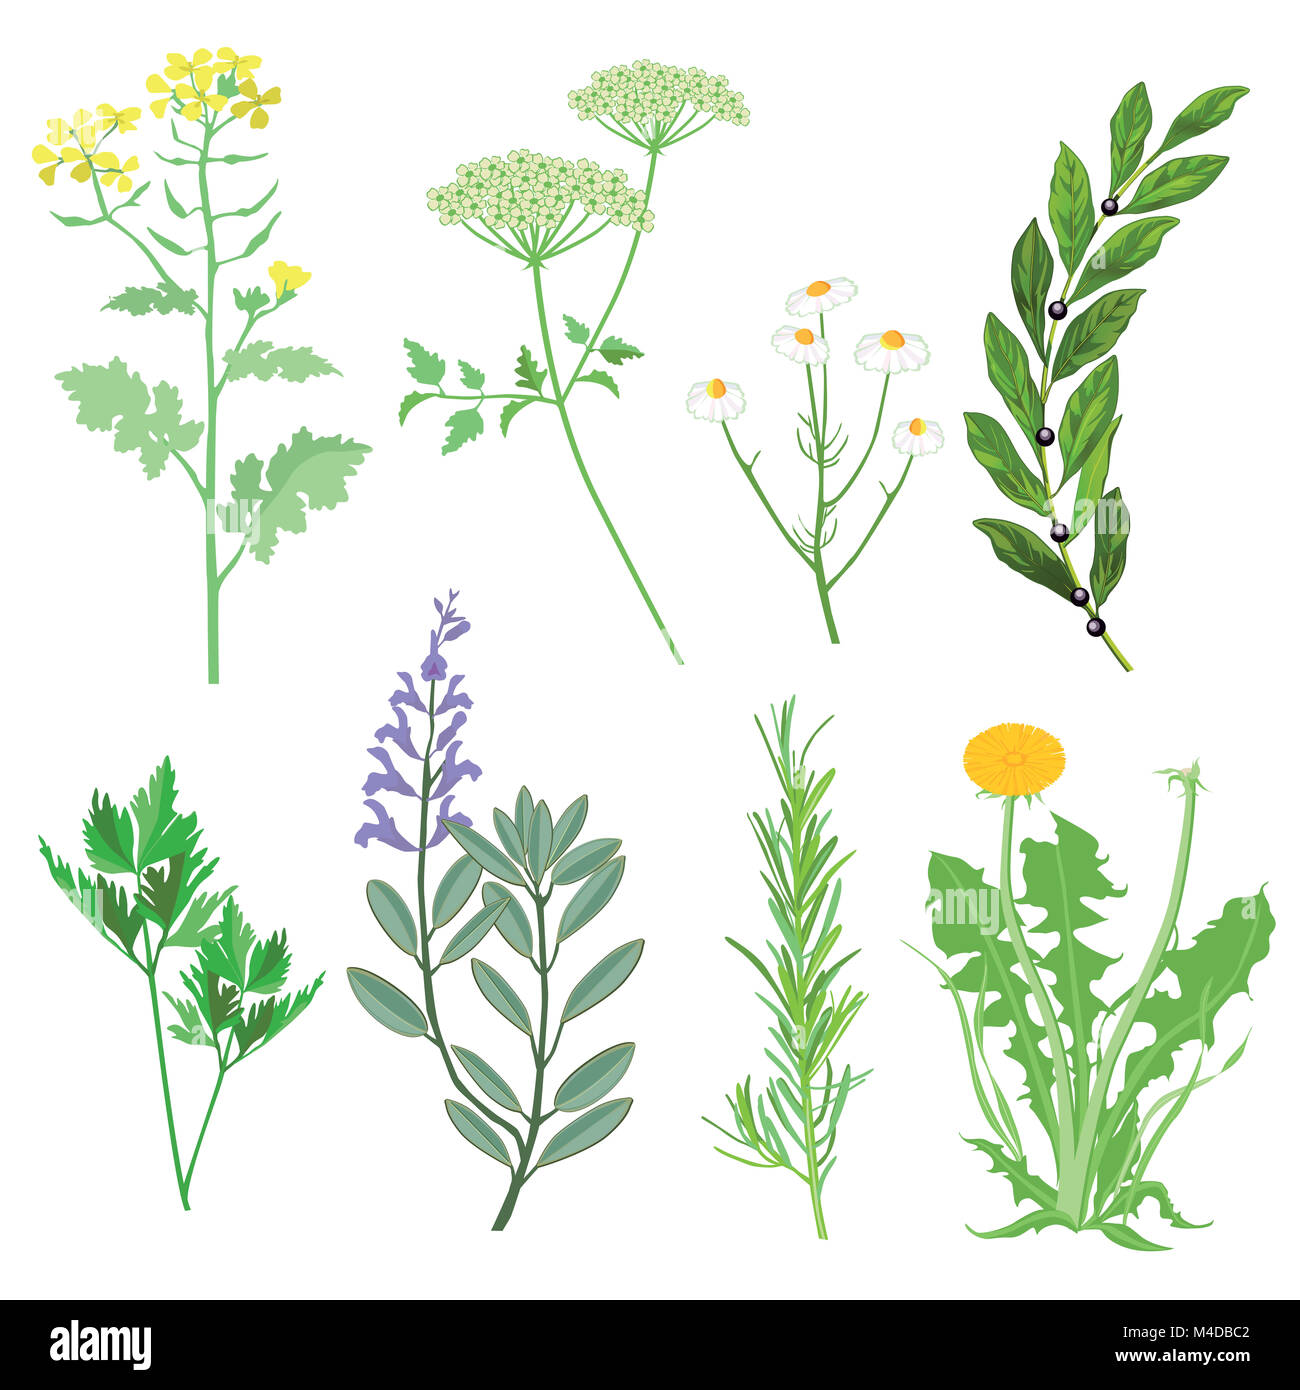 Les herbes et les plantes médicinales. Illustration botanique Banque D'Images